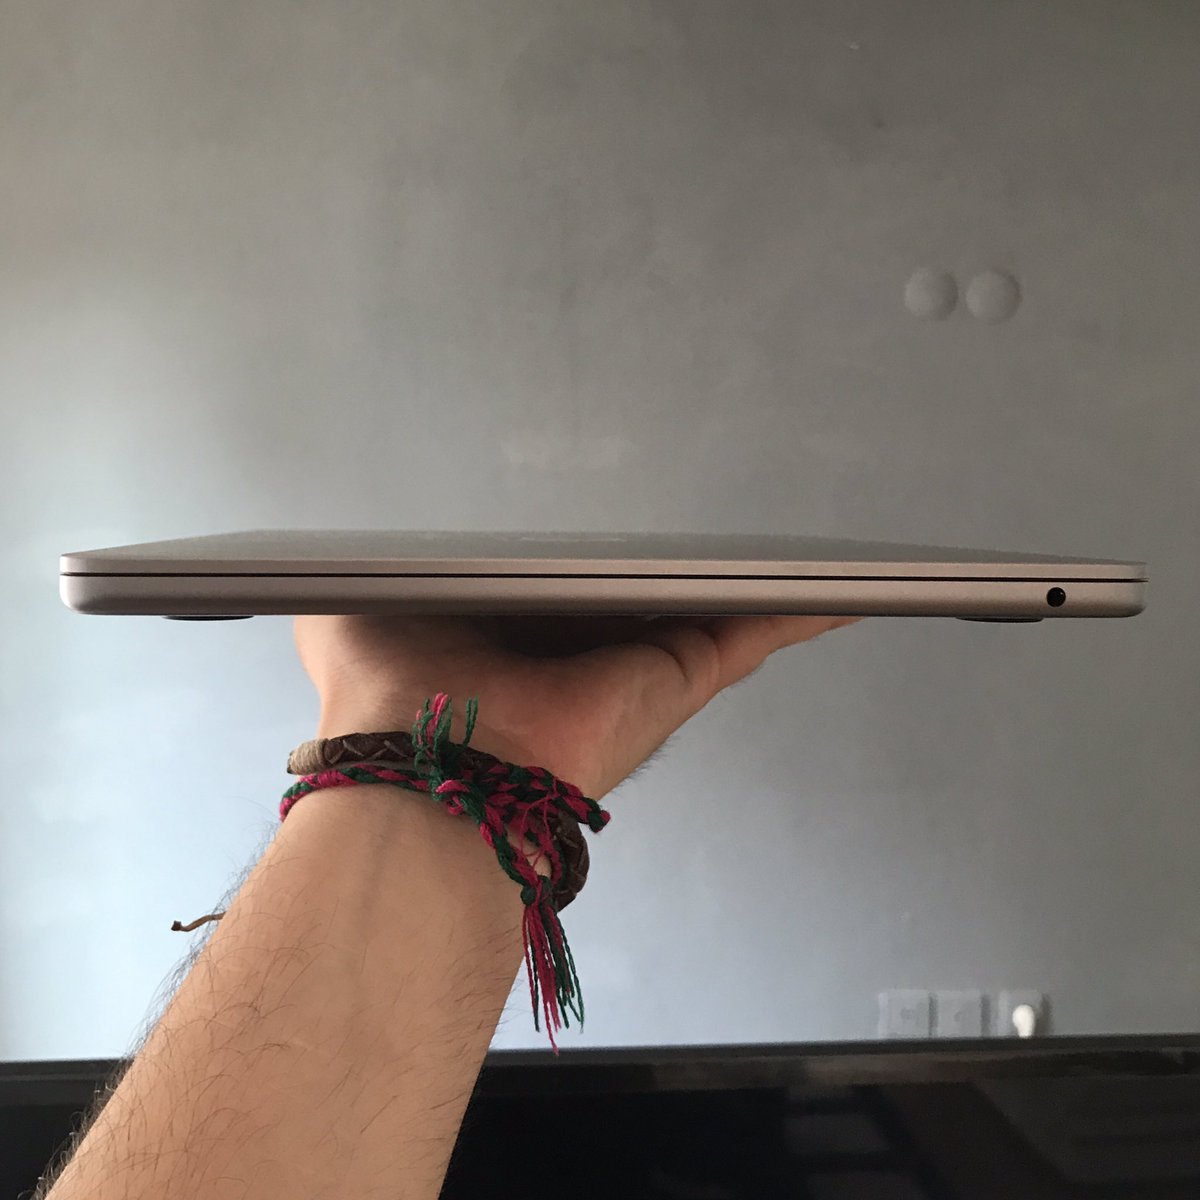 MacBook Air sahipleri şu an “bu ne?” diye bakıyor hahhahsh